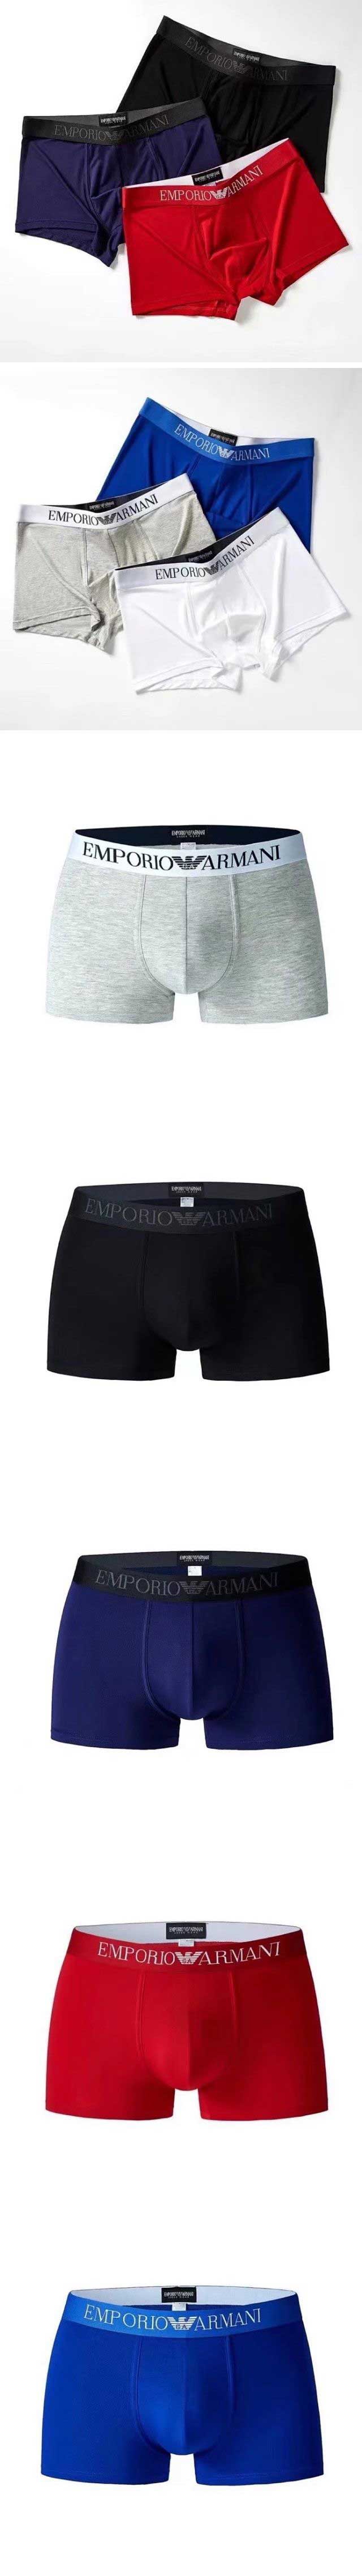 Armani Boxer Pants アルマーニ ボクサーパンツ